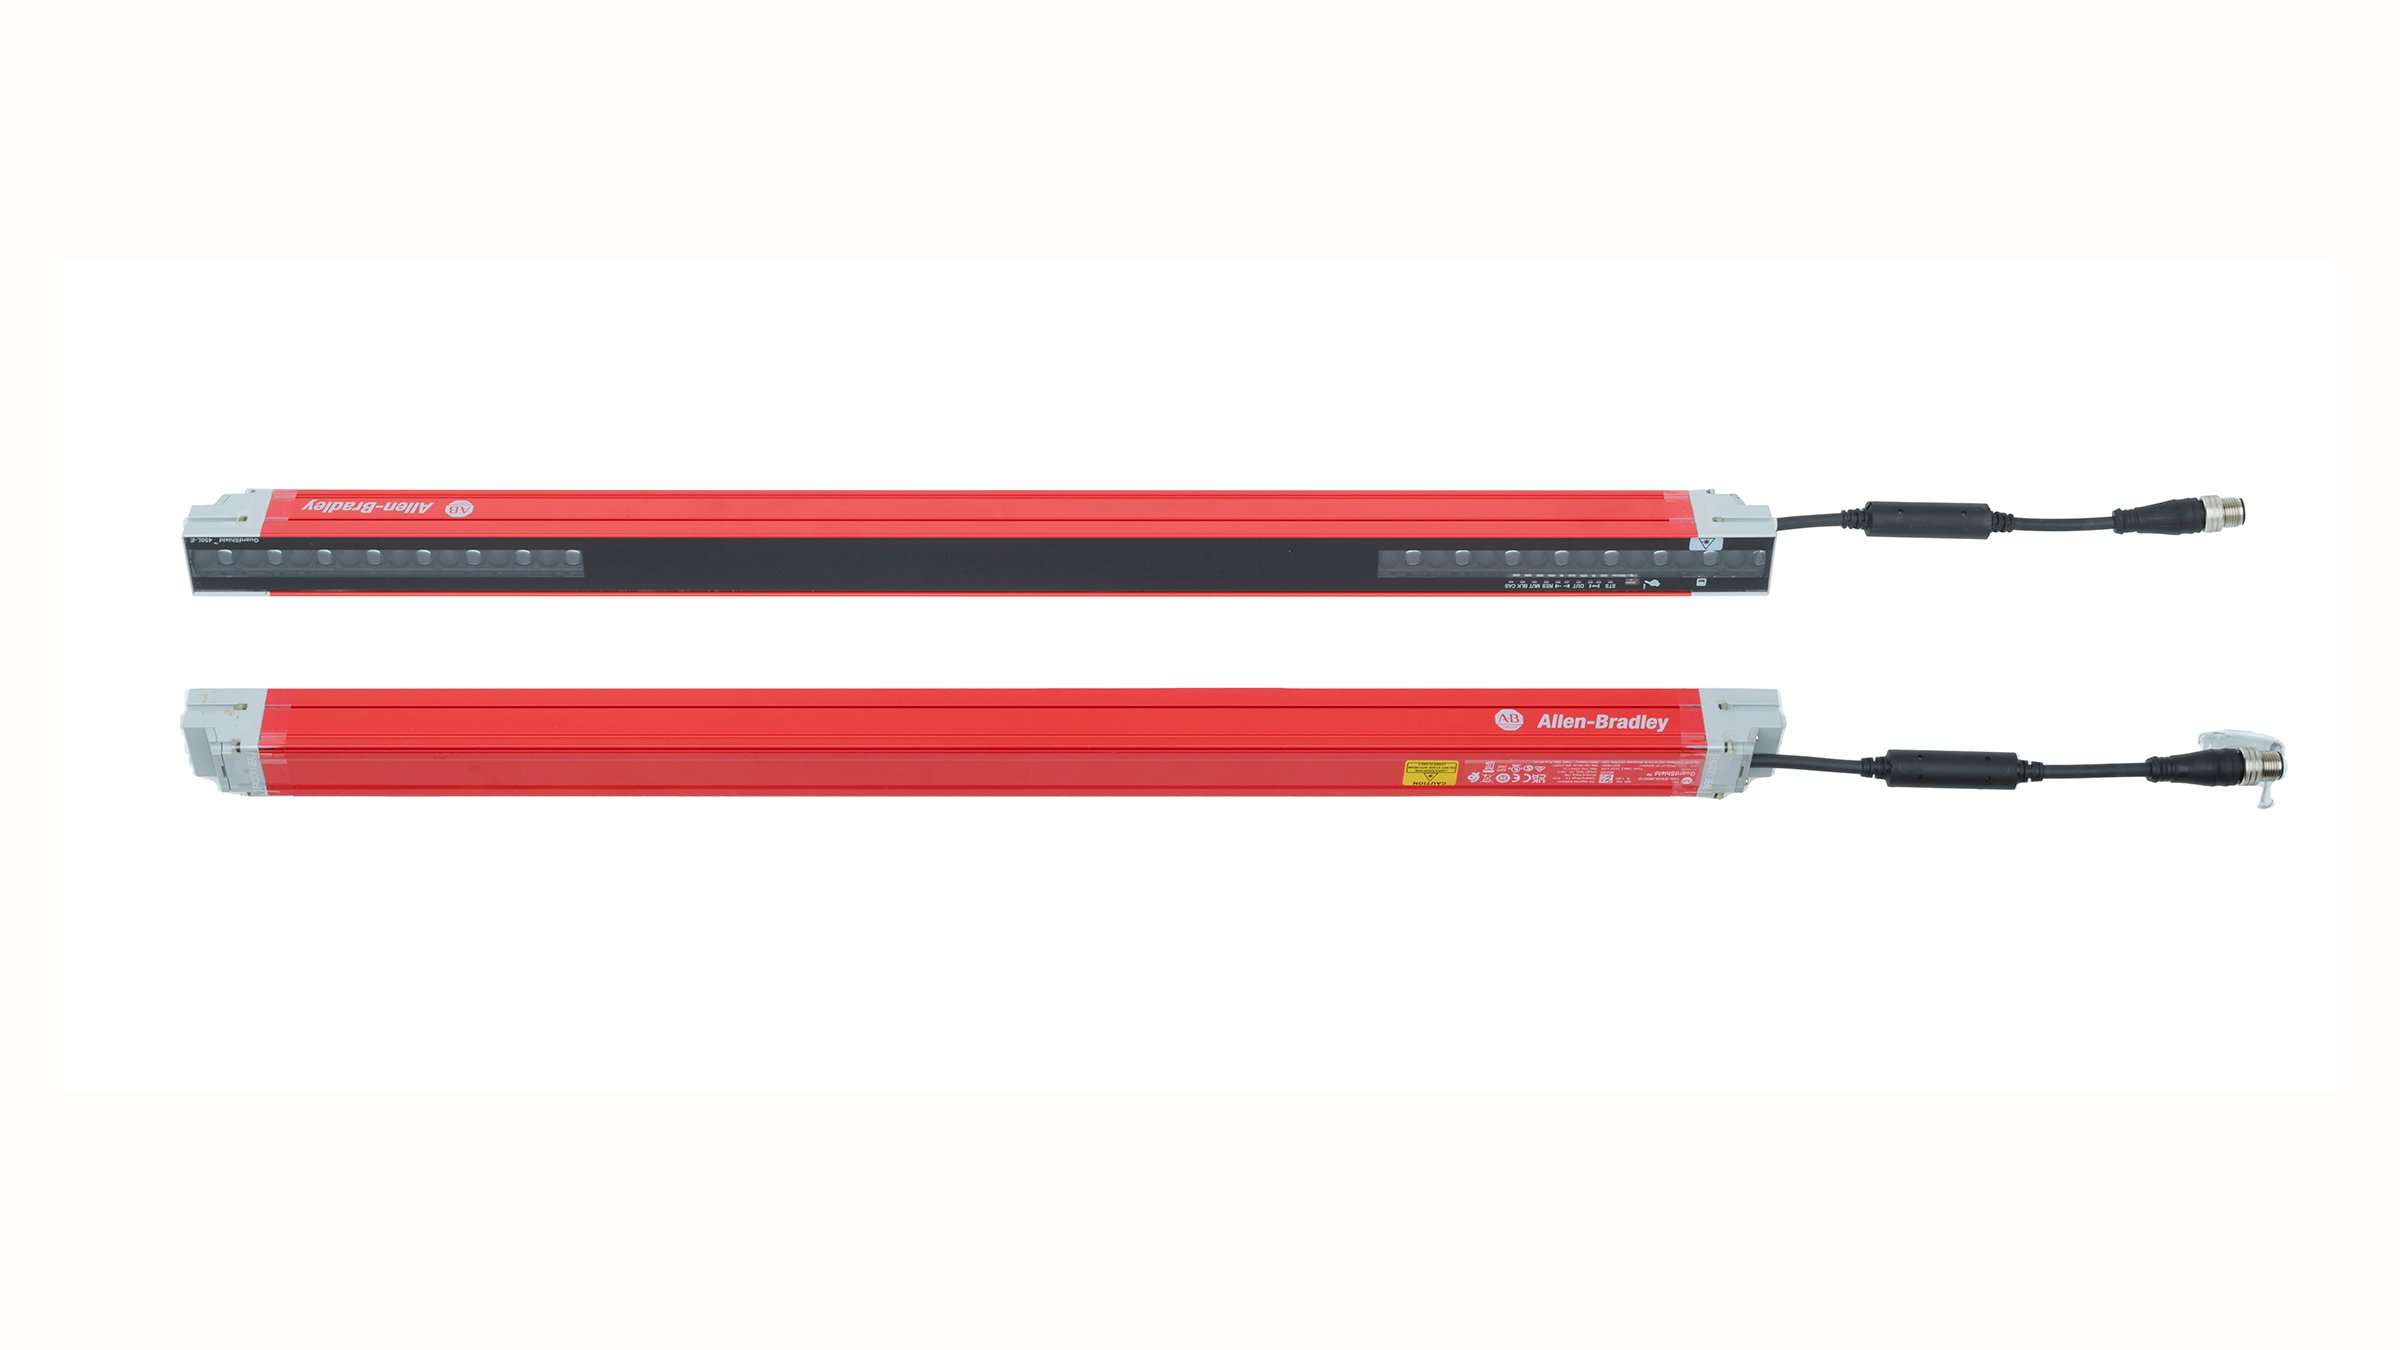 Ein horizontal positioniertes Paar an 600 mm langen roten Sicherheitslichtgittern mit grauen Endkappen und mit sich gegenüberstehenden Linsen mit Plug-ins und Stecker-Pigtails am rechten Ende